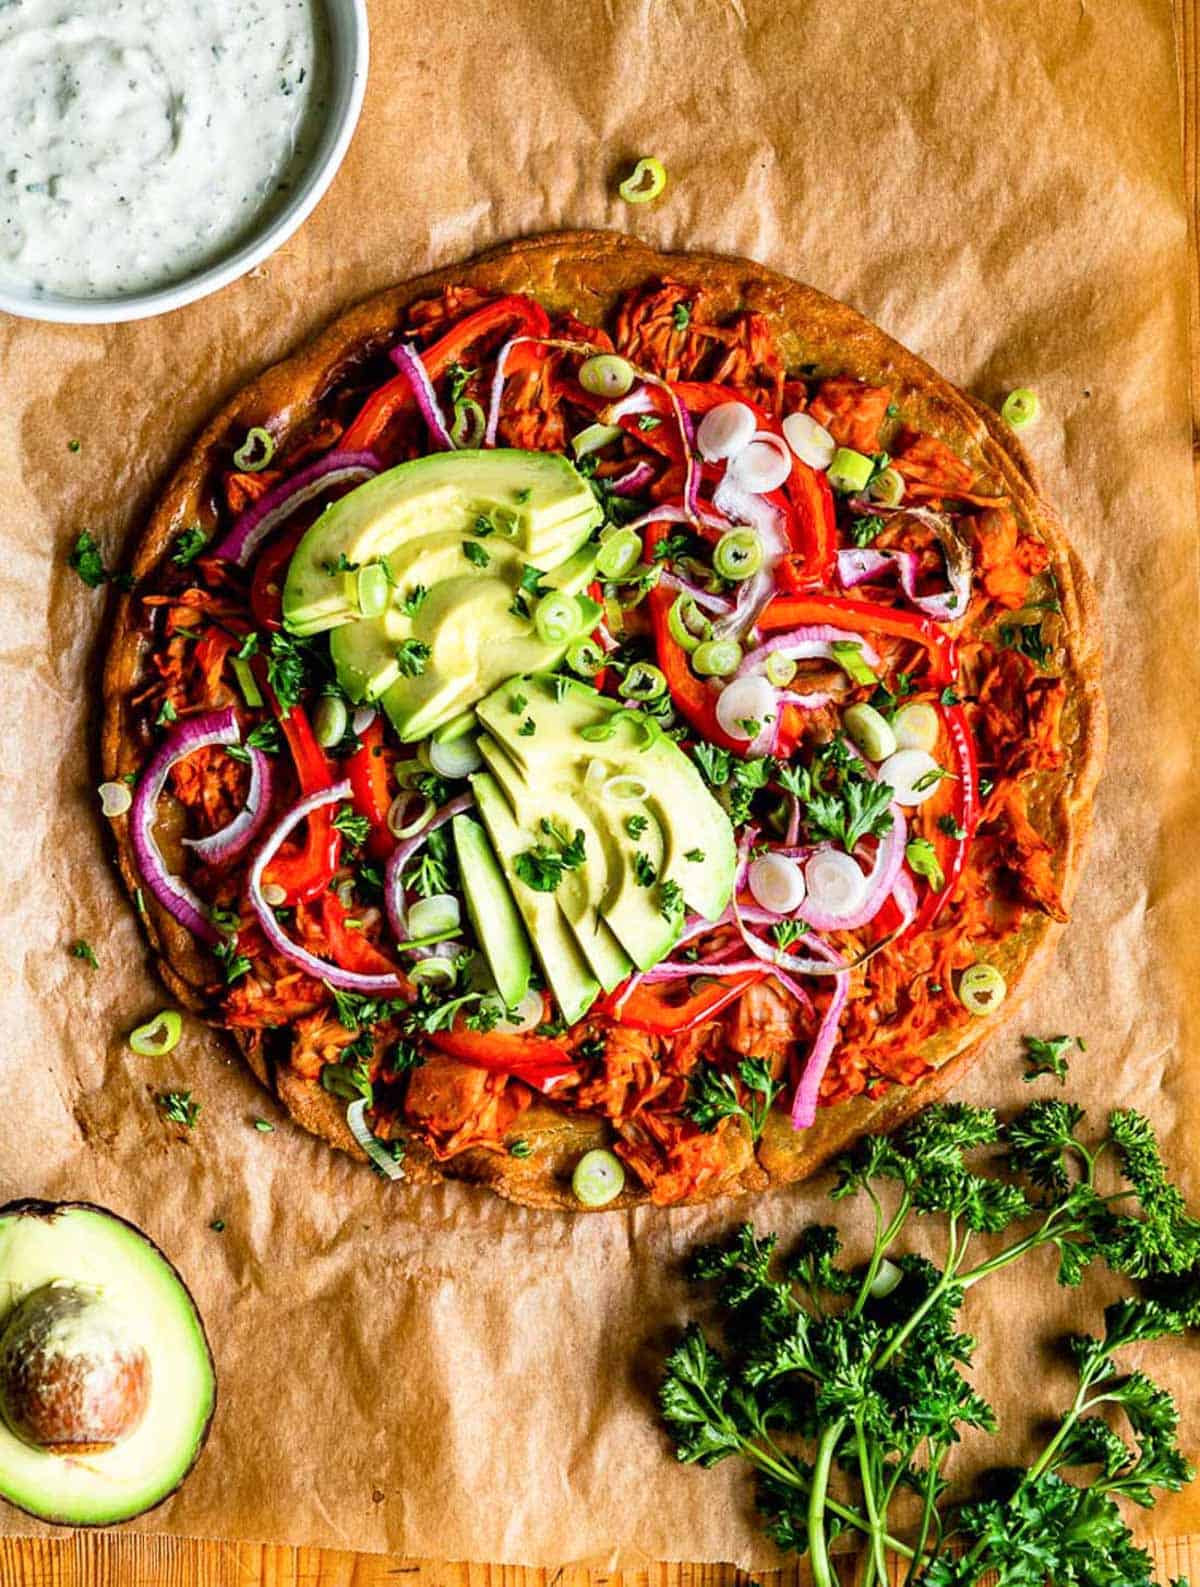 DIY vegan pizza crust recipe